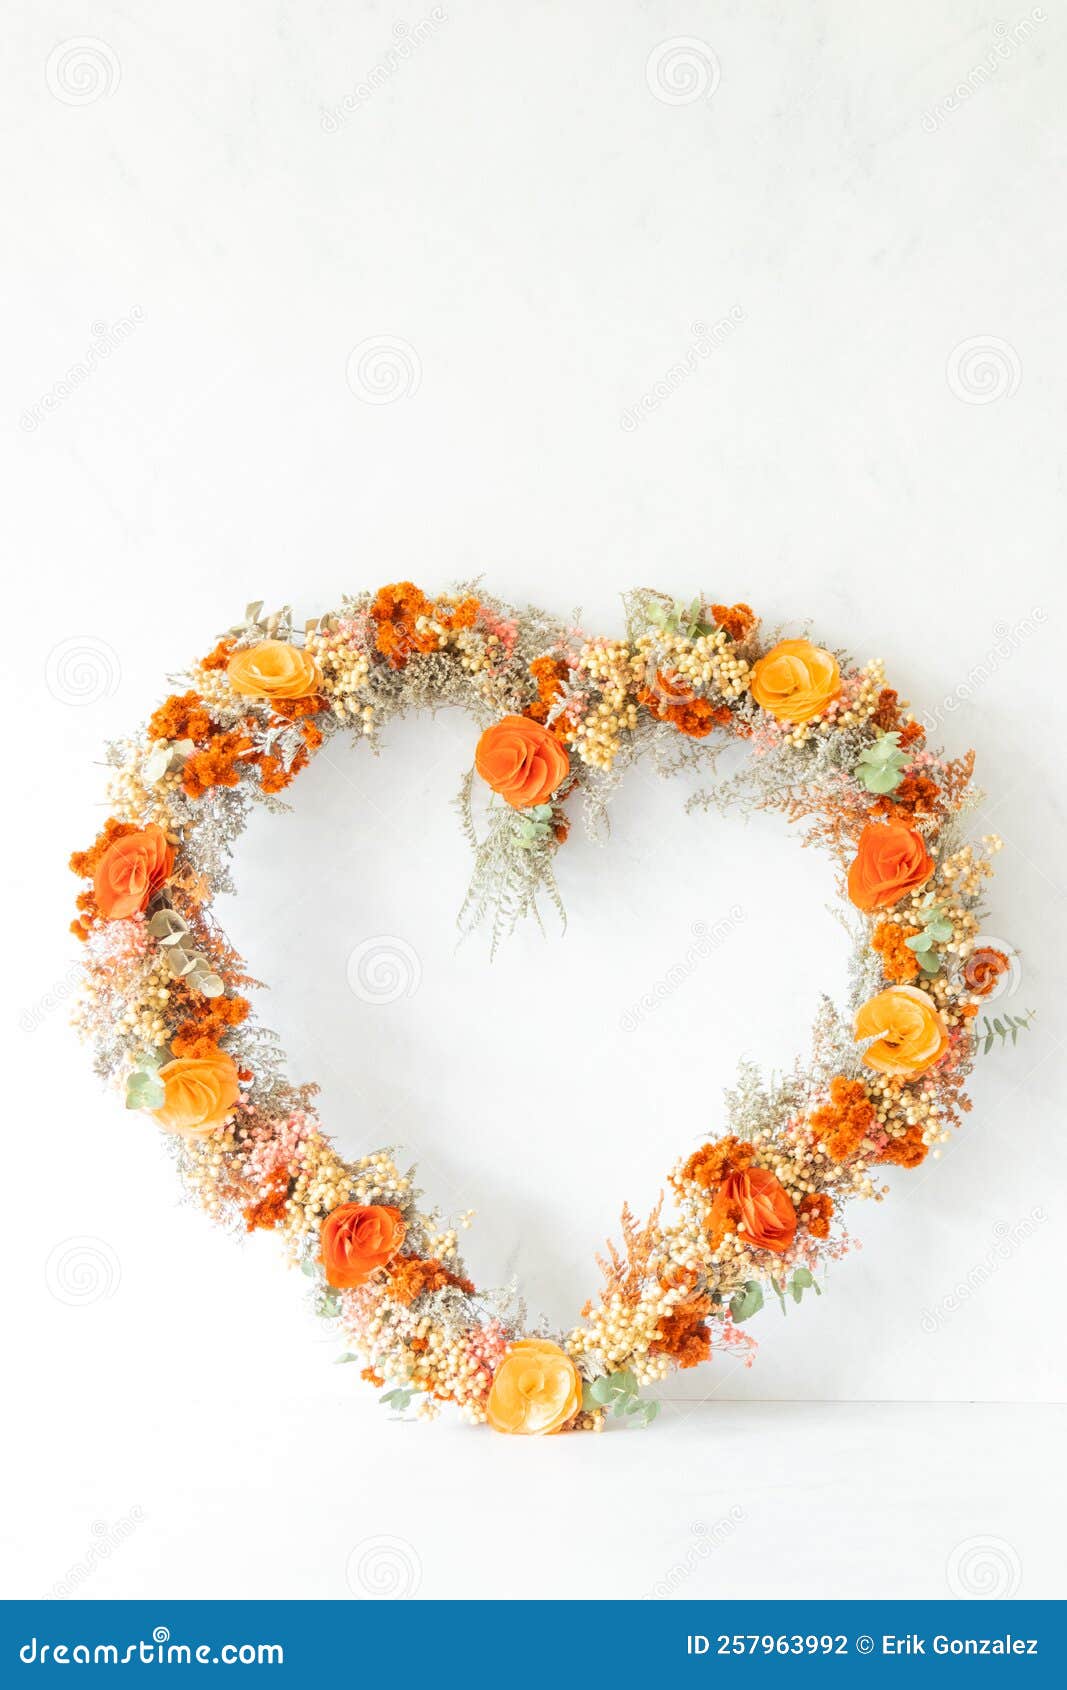 colorful heart d flower arrangement